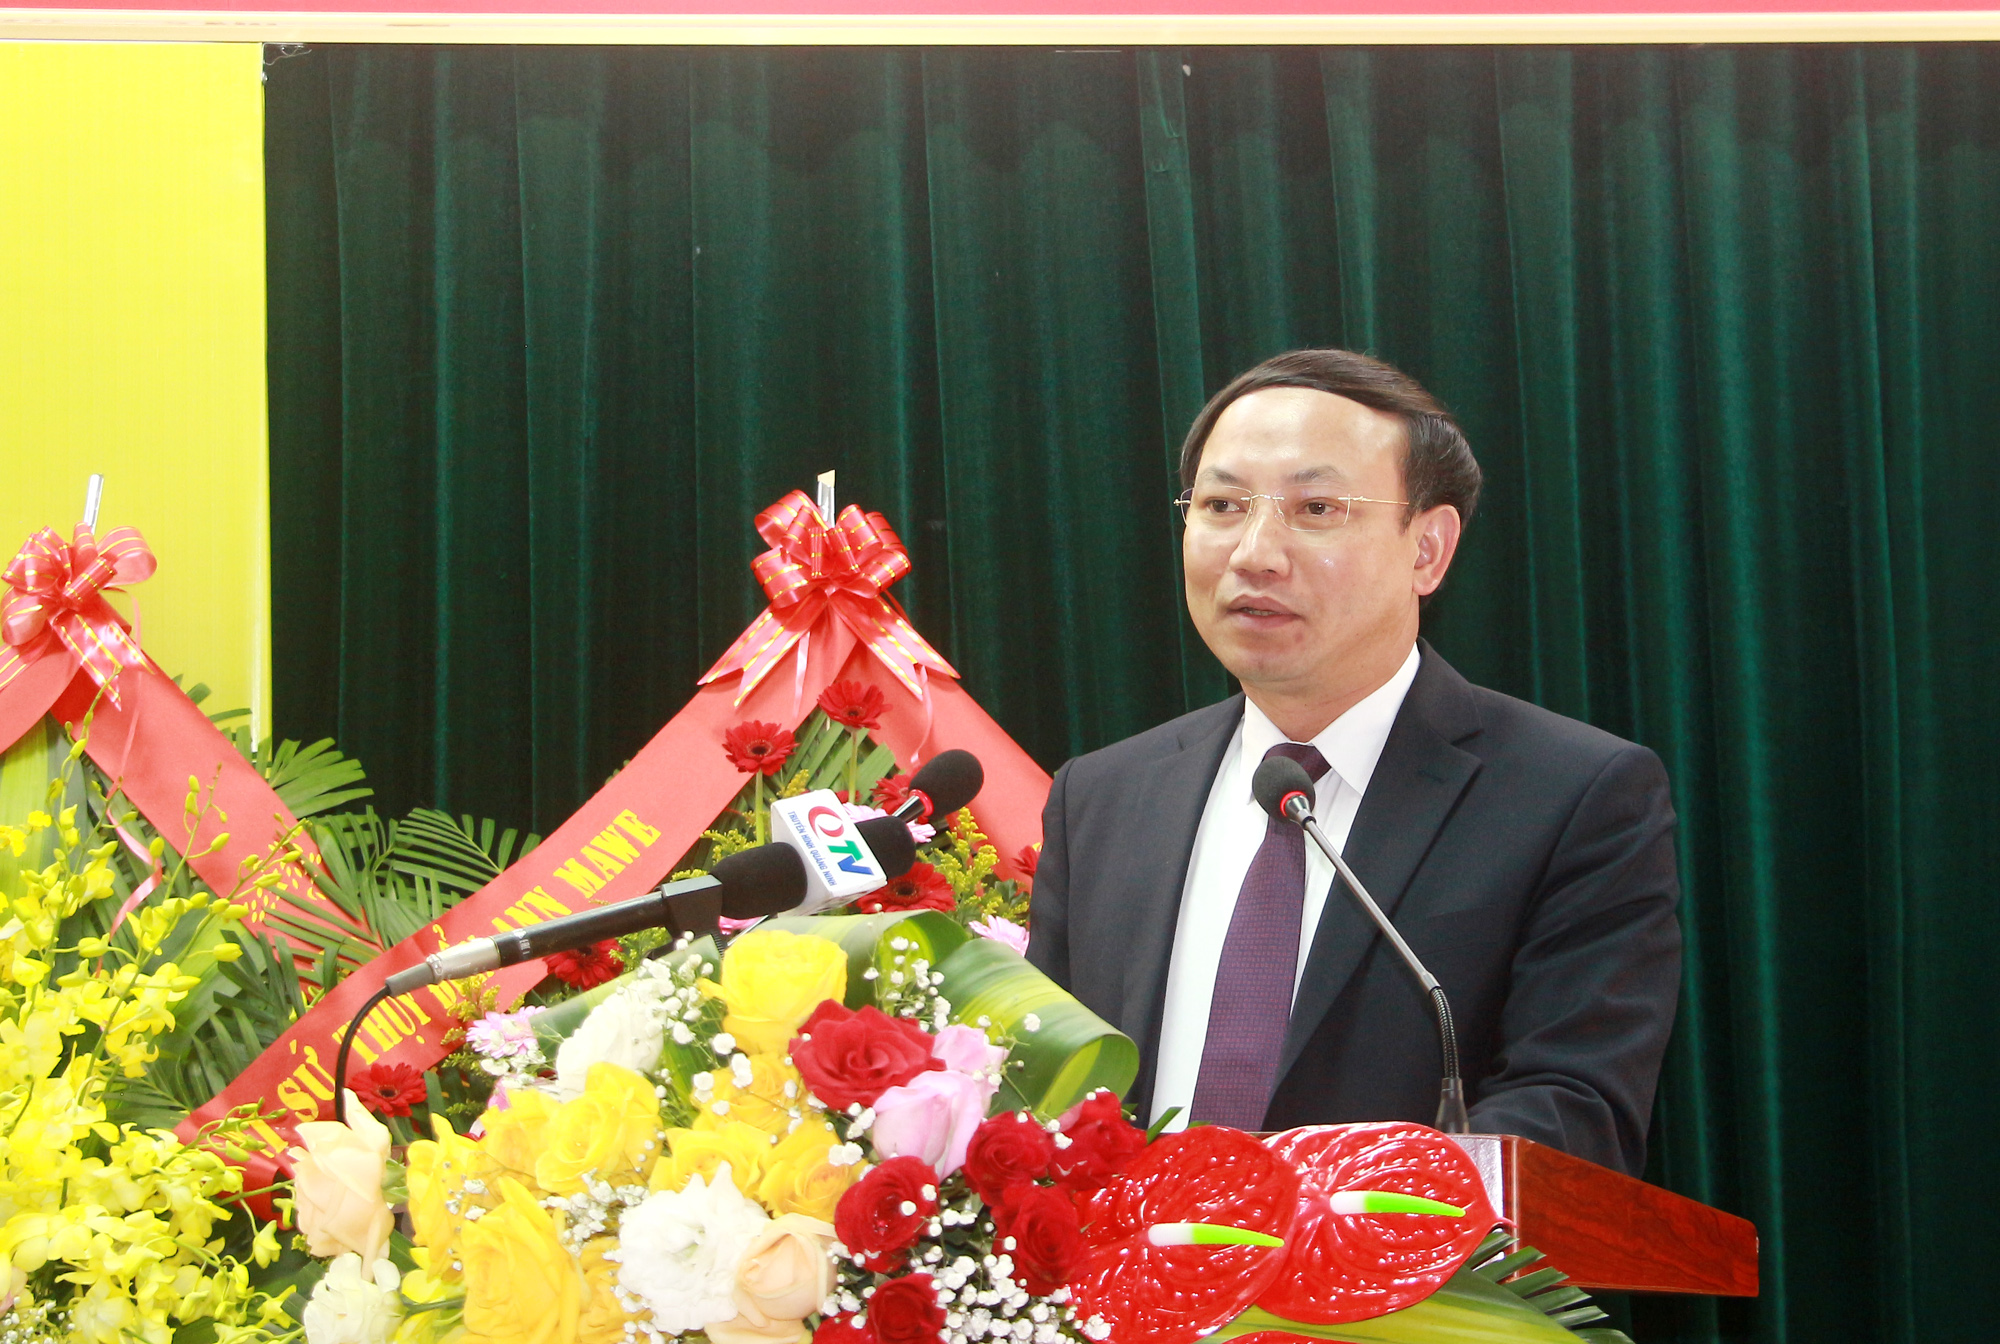 Đồng chí Nguyễn Xuân Ký, Bí thư Tỉnh ủy, Chủ tịch HĐND tỉnh, phát biểu tại buổi lễ.